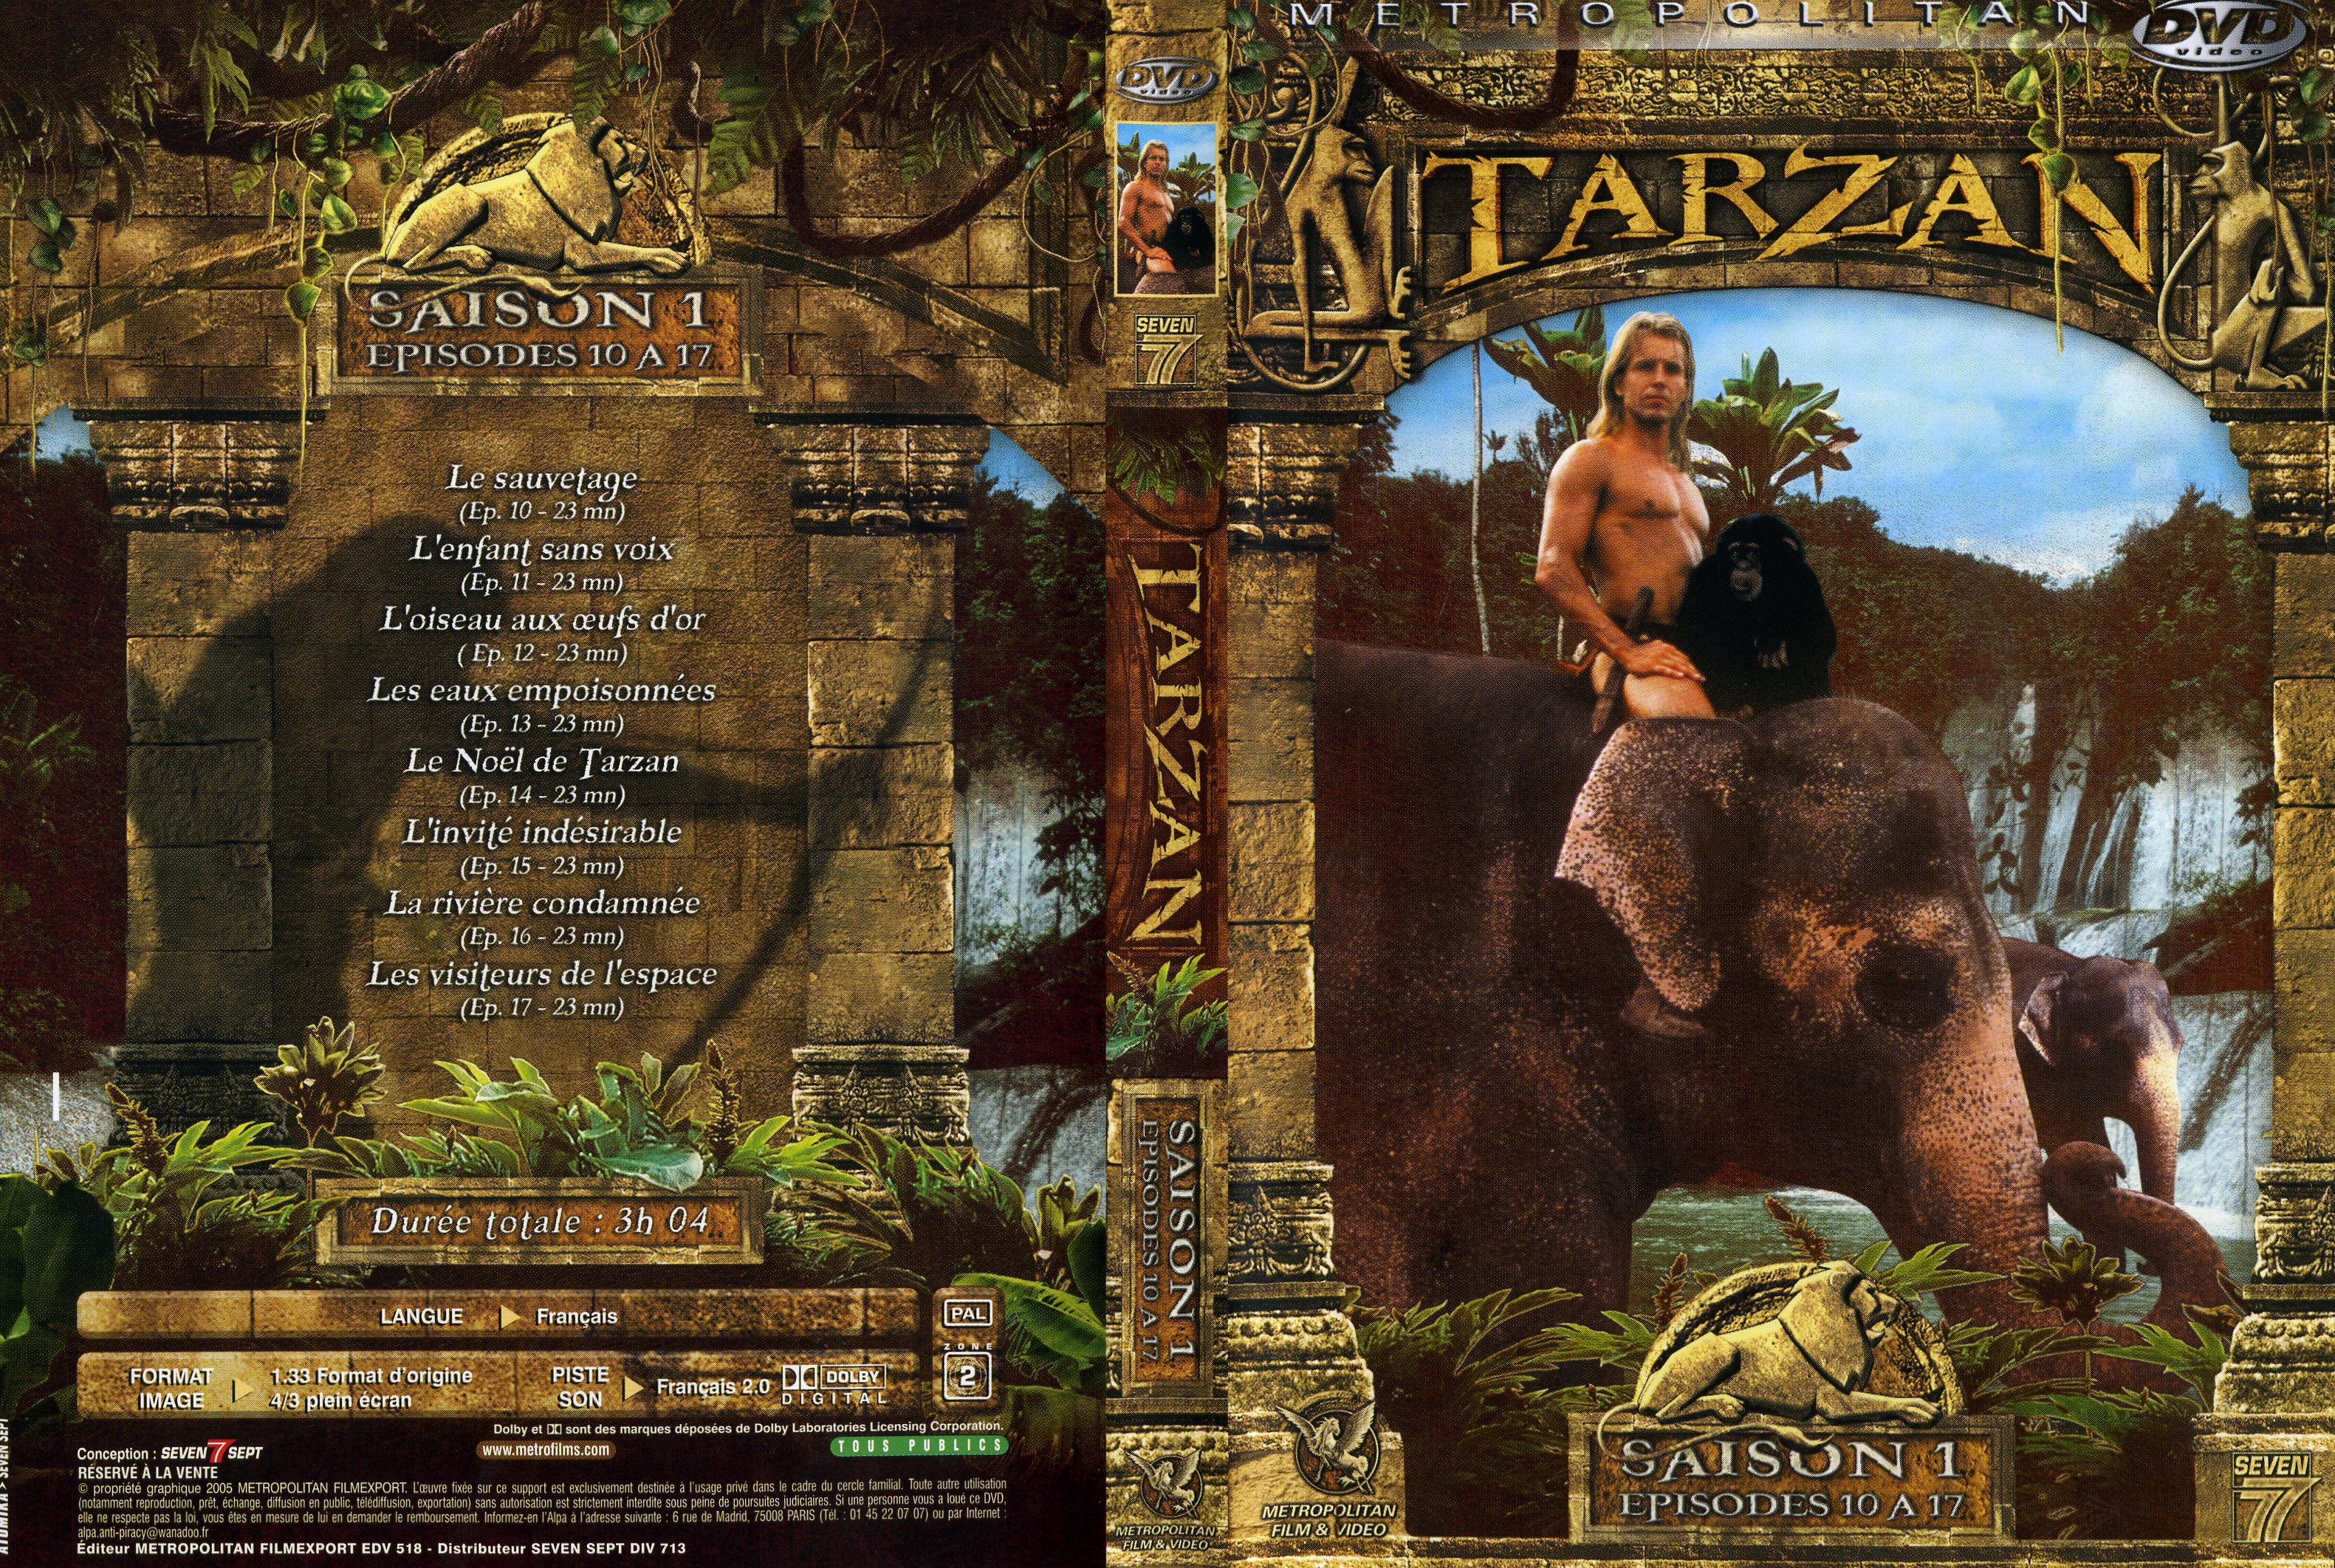 Jaquette DVD Tarzan Saison 1 DVD 2